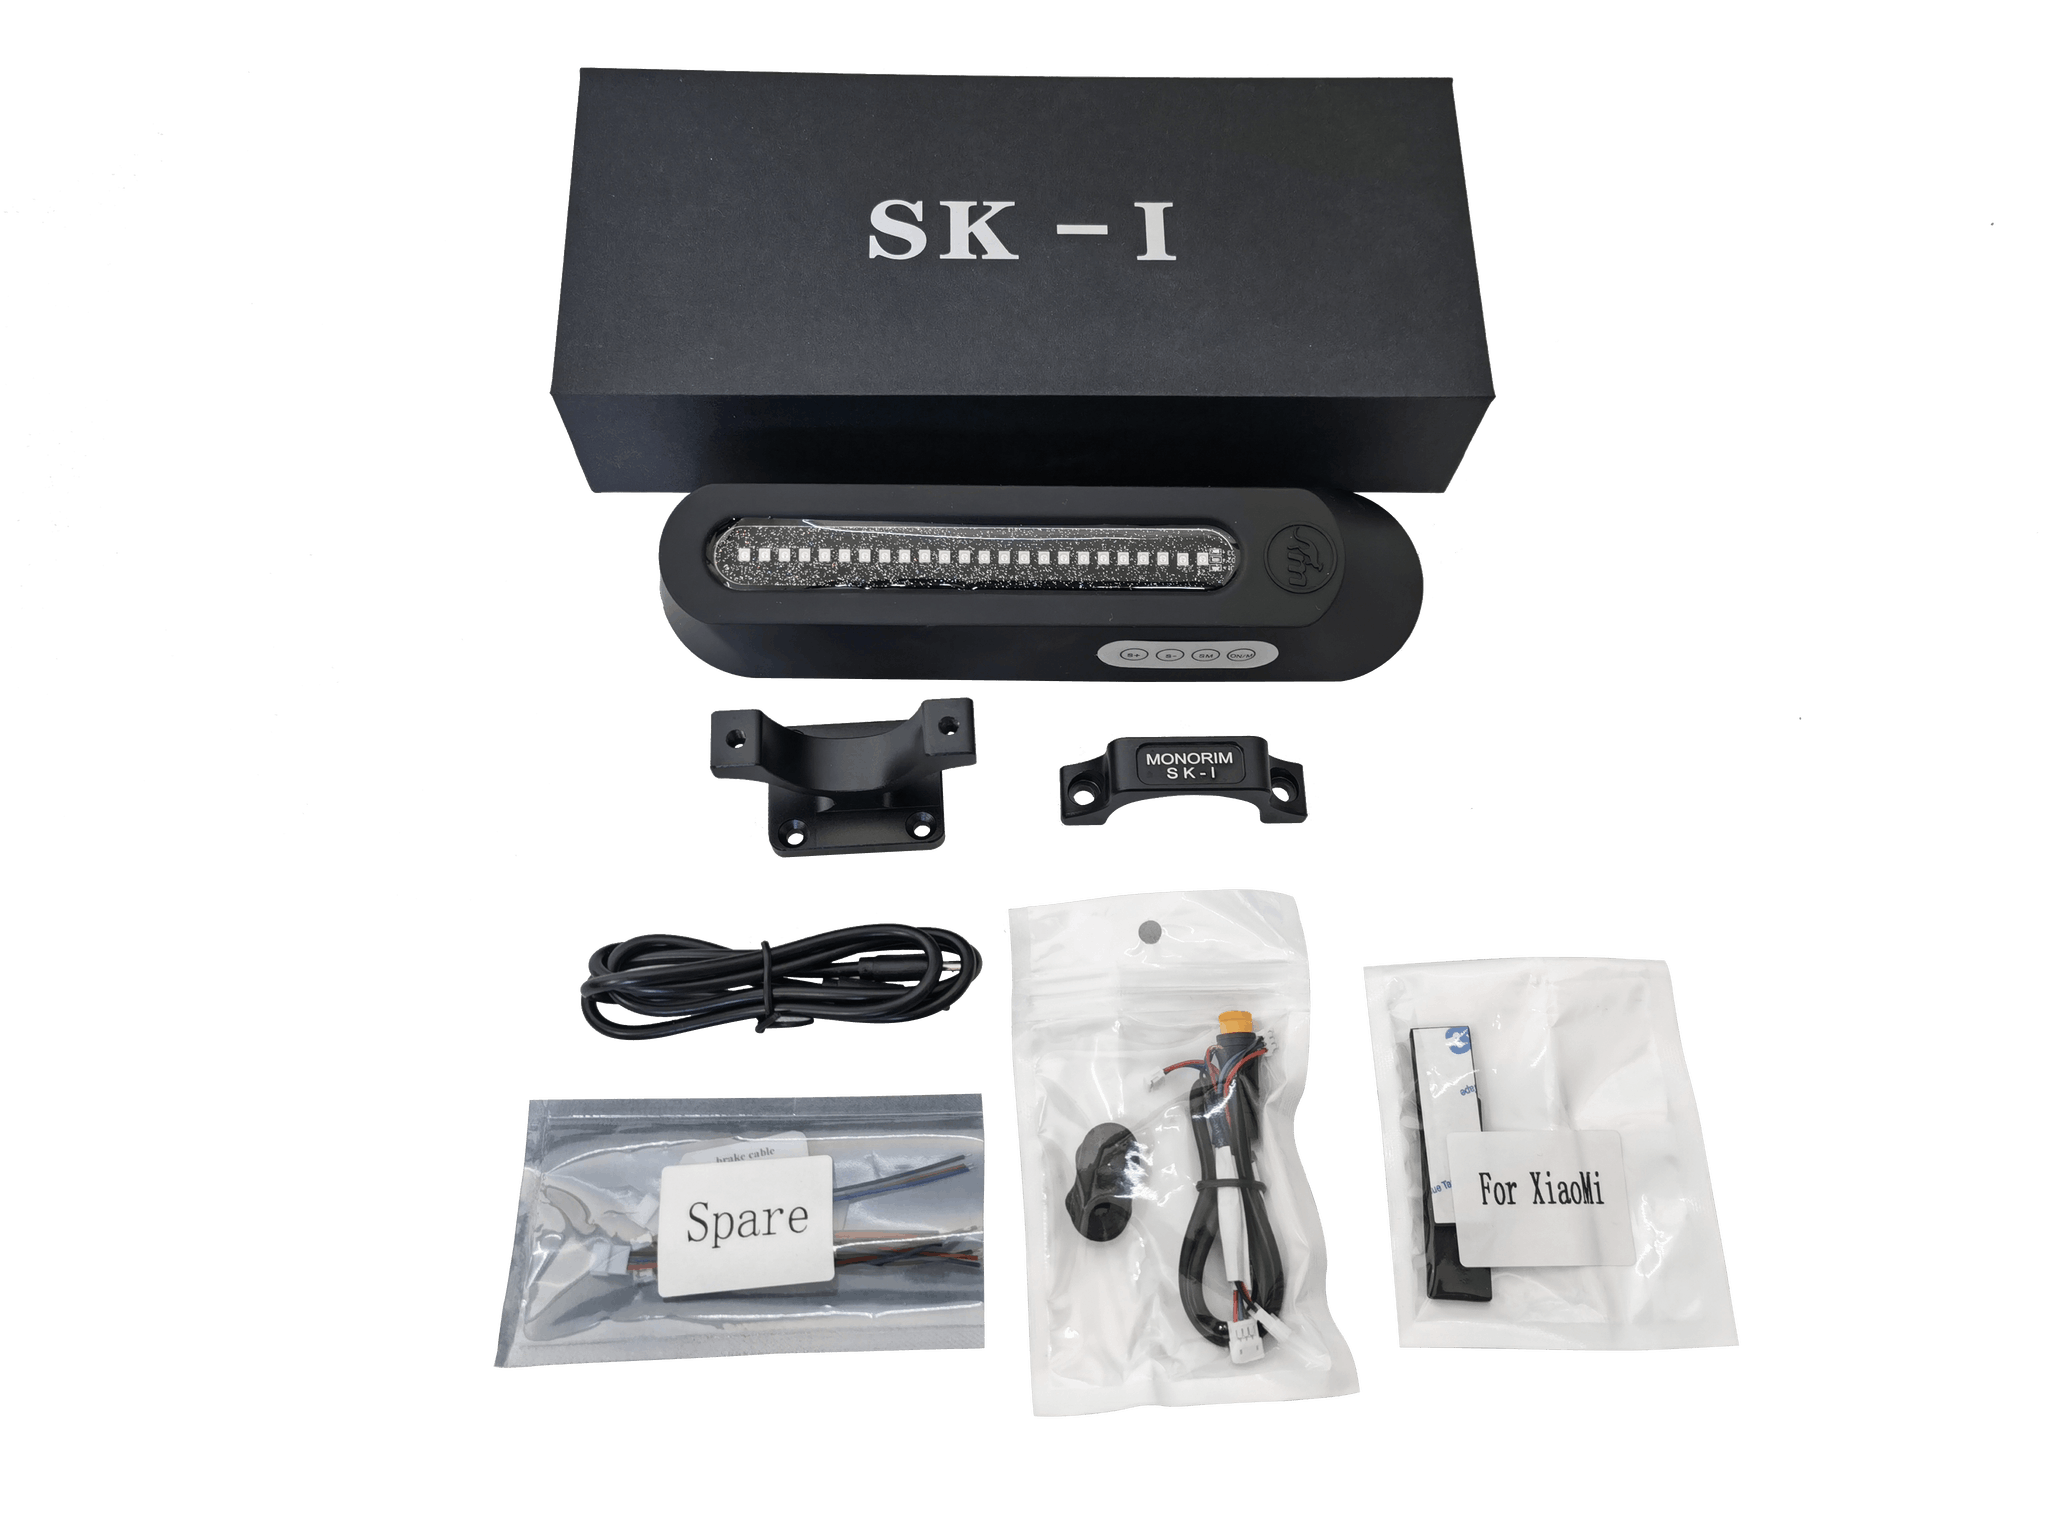 Monorim SK-1 gas och bromshögtalare